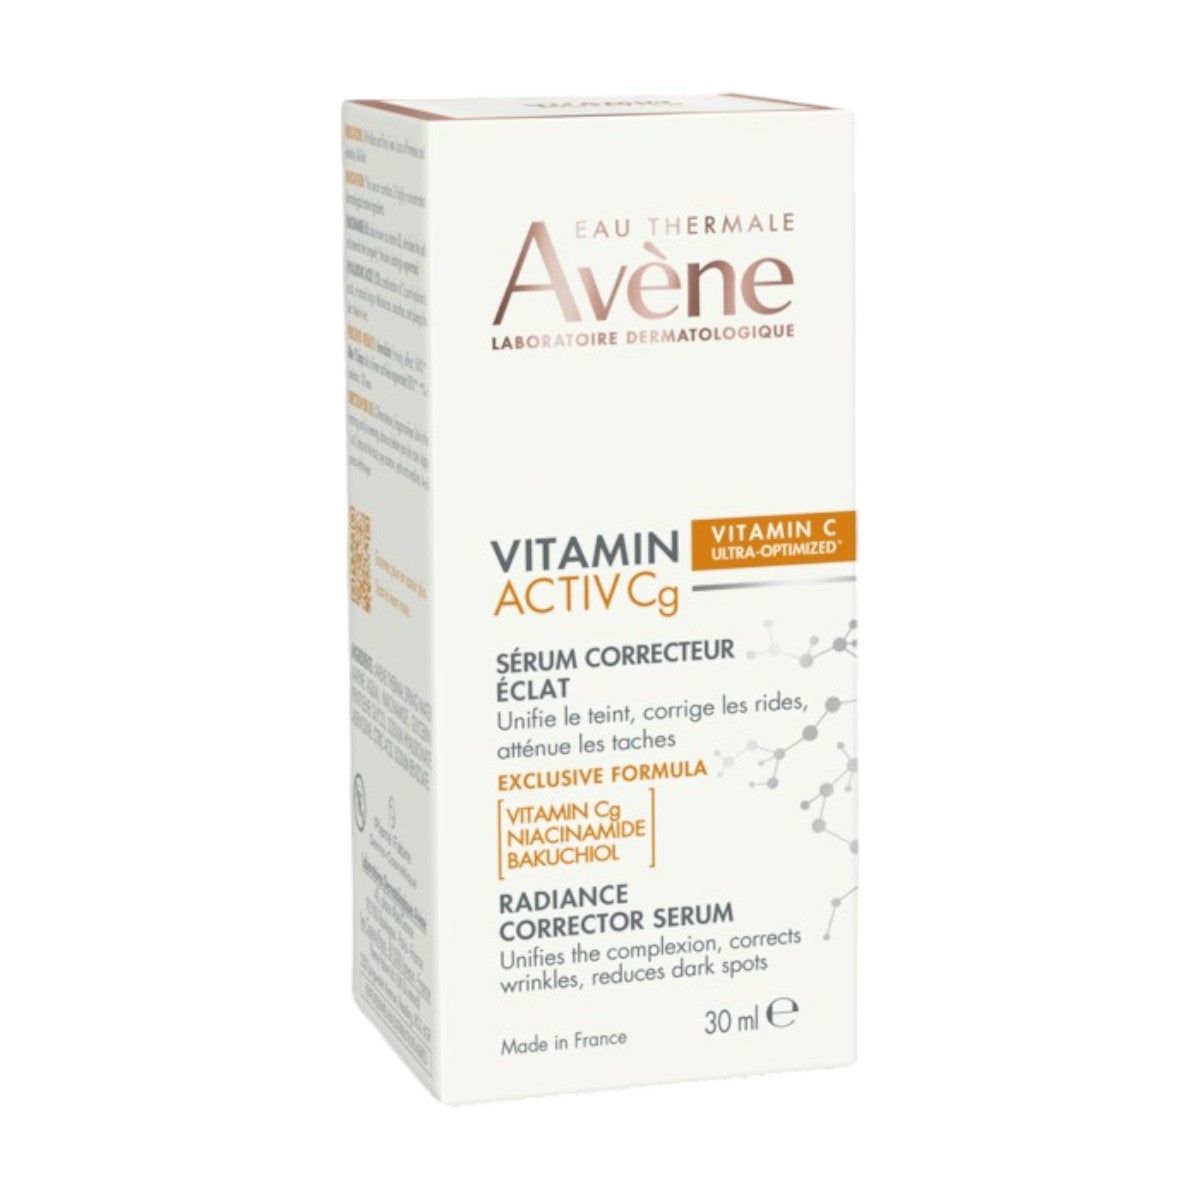 Avene Vitamina C Niacinamida y Bakuchiol Activ CG Antioxidante Despigmentante Antiarrugas 30 ml